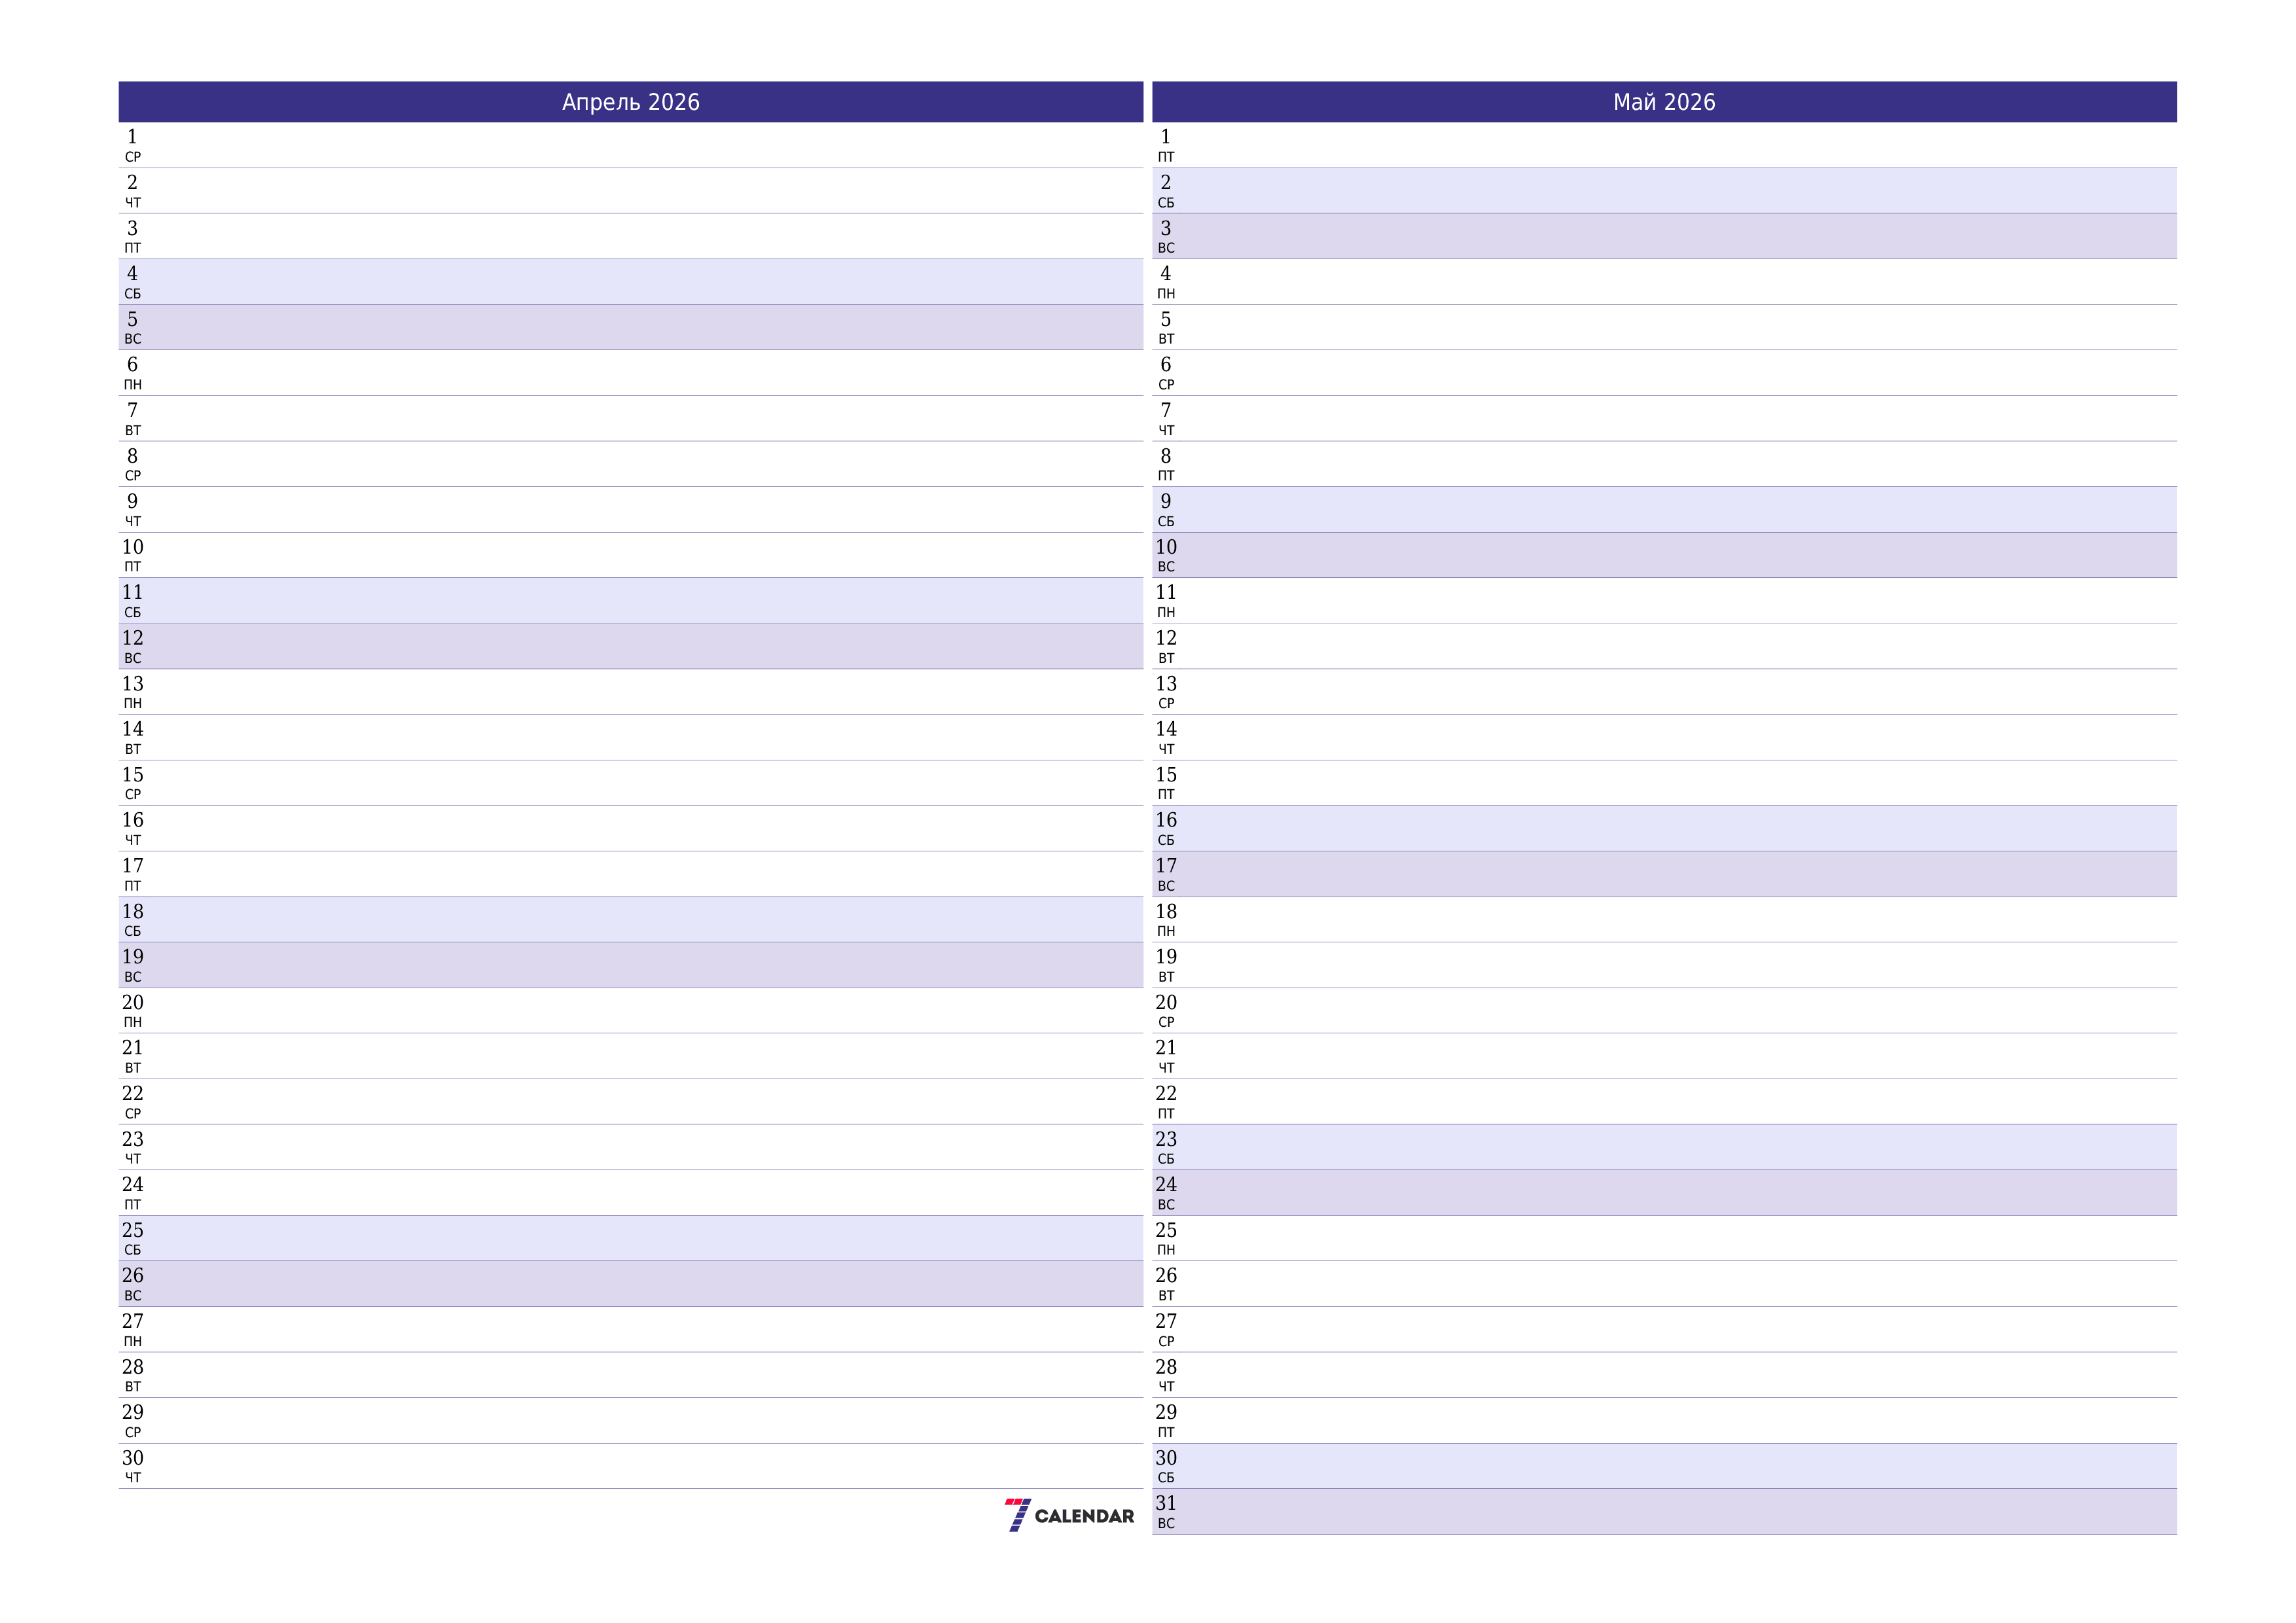 Пустой ежемесячный календарь-планер на месяц Апрель 2026